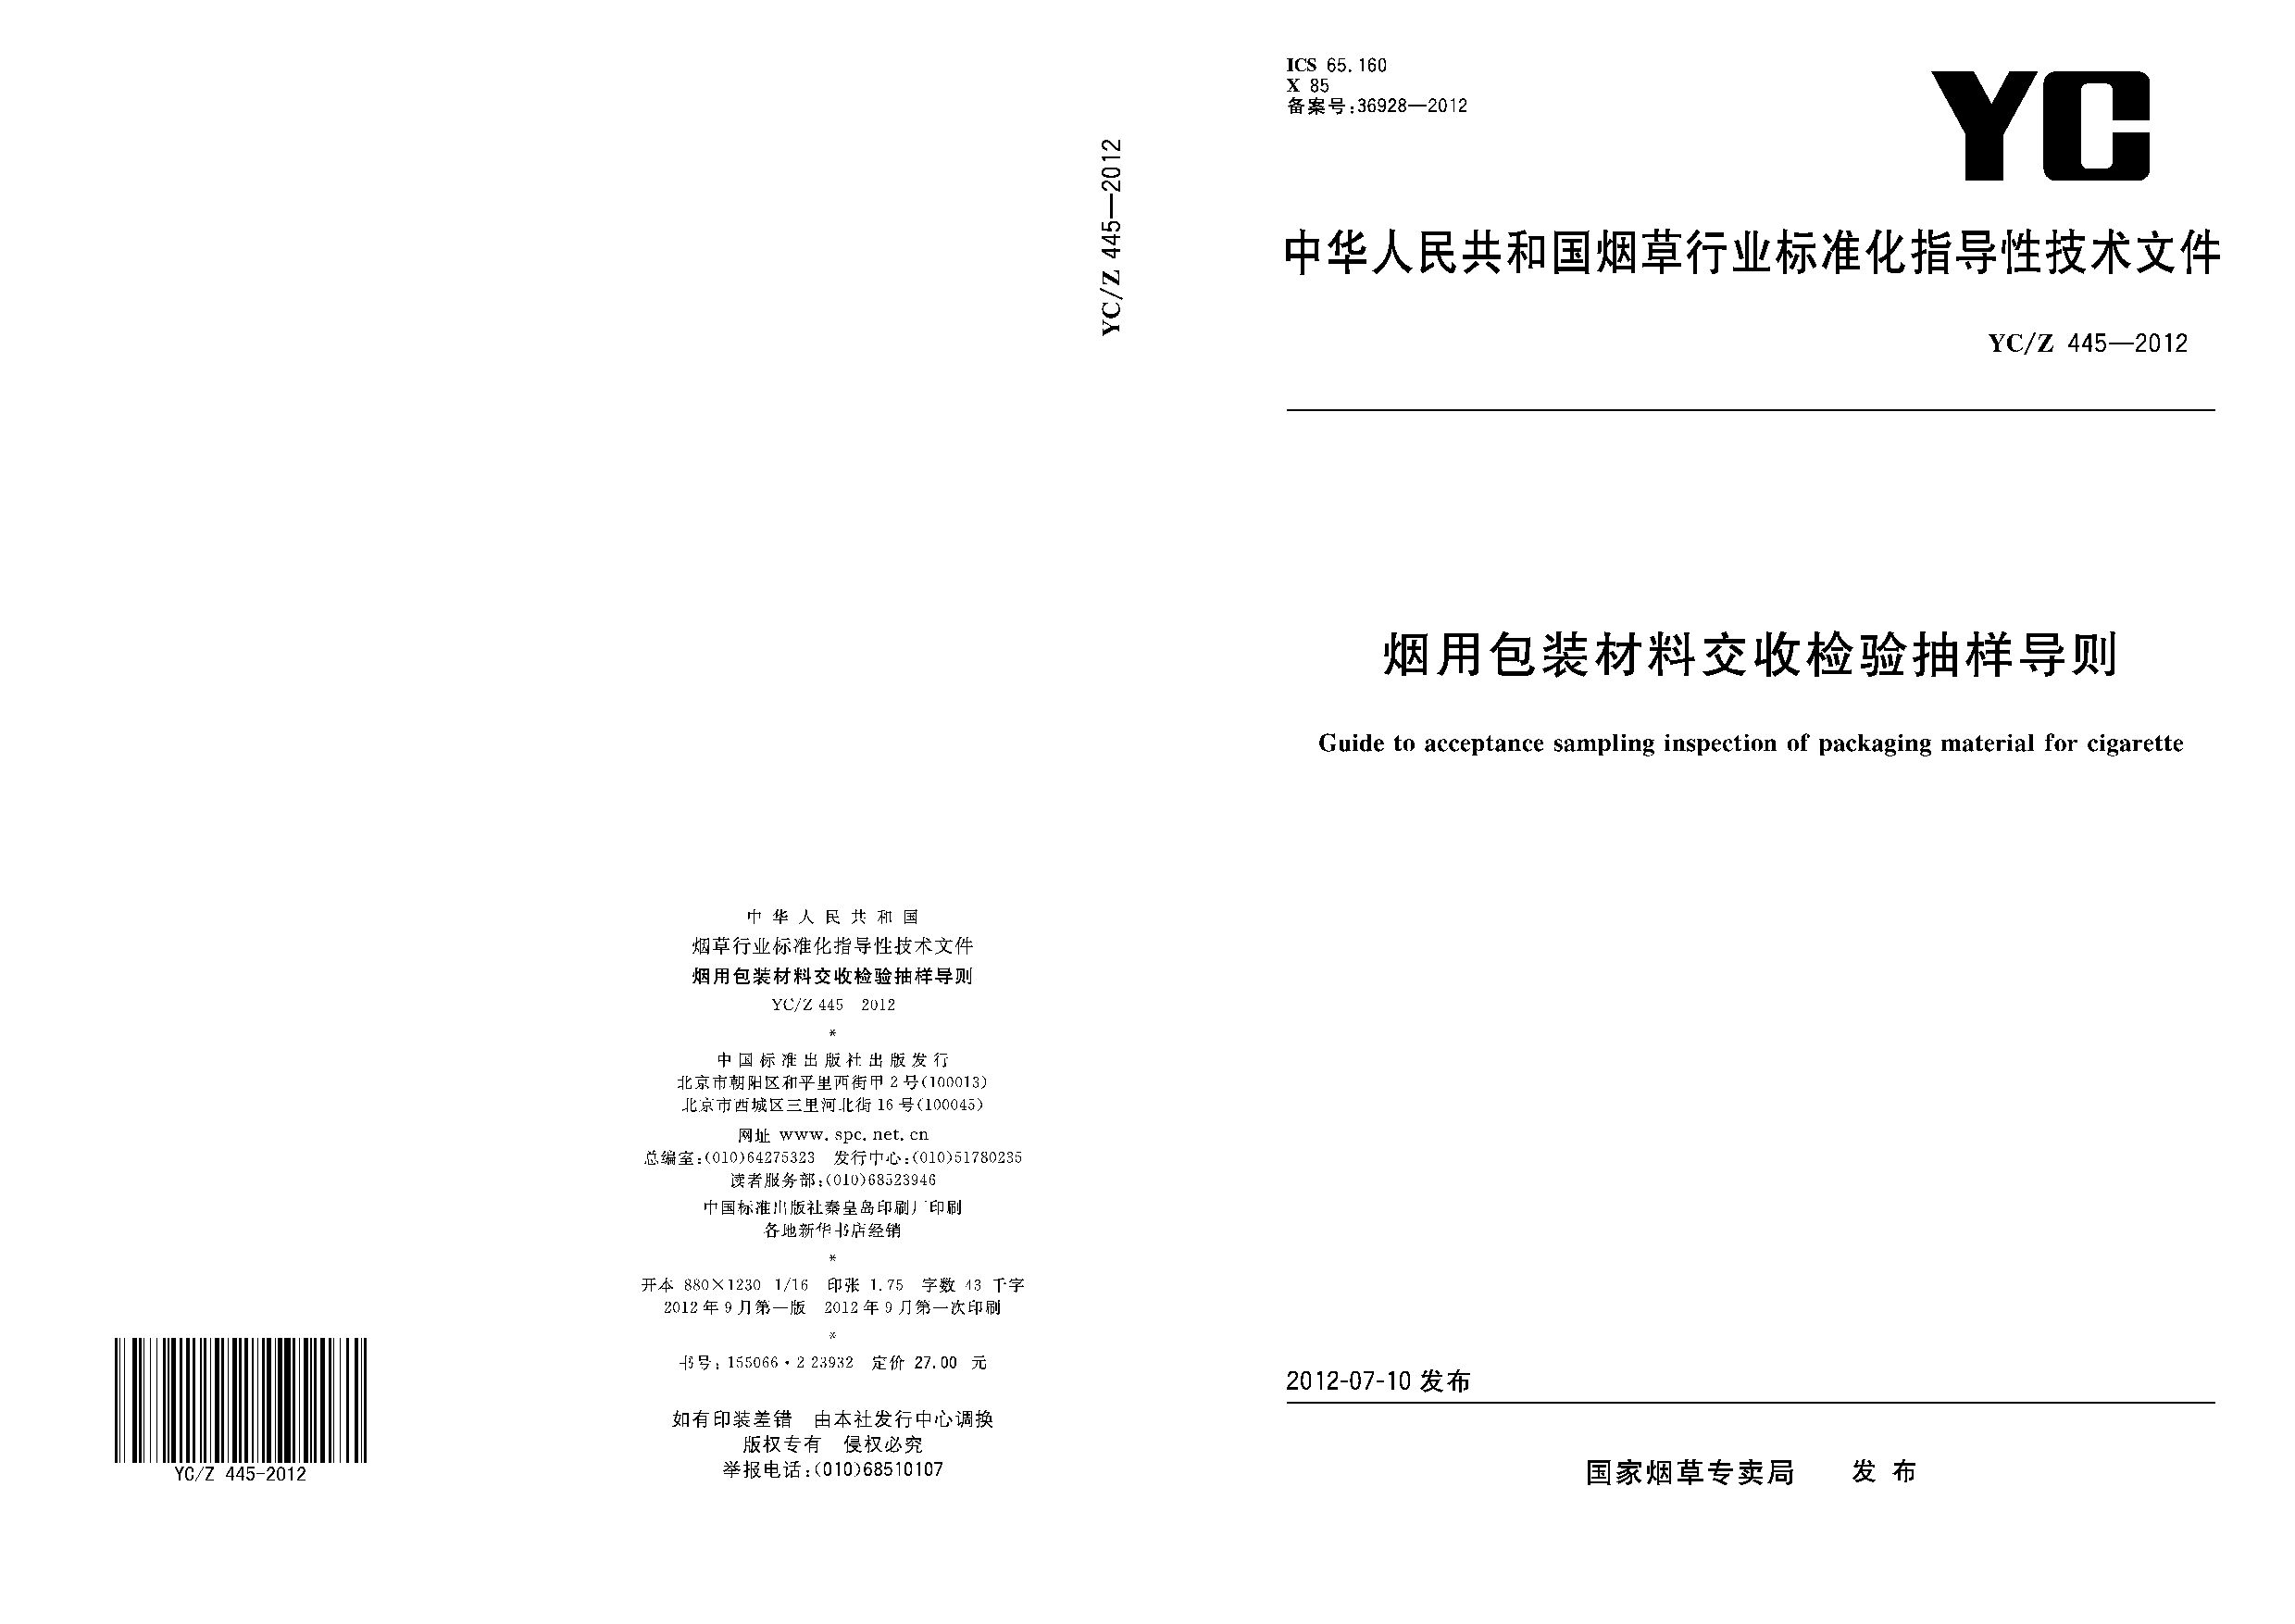 YC/Z 445-2012